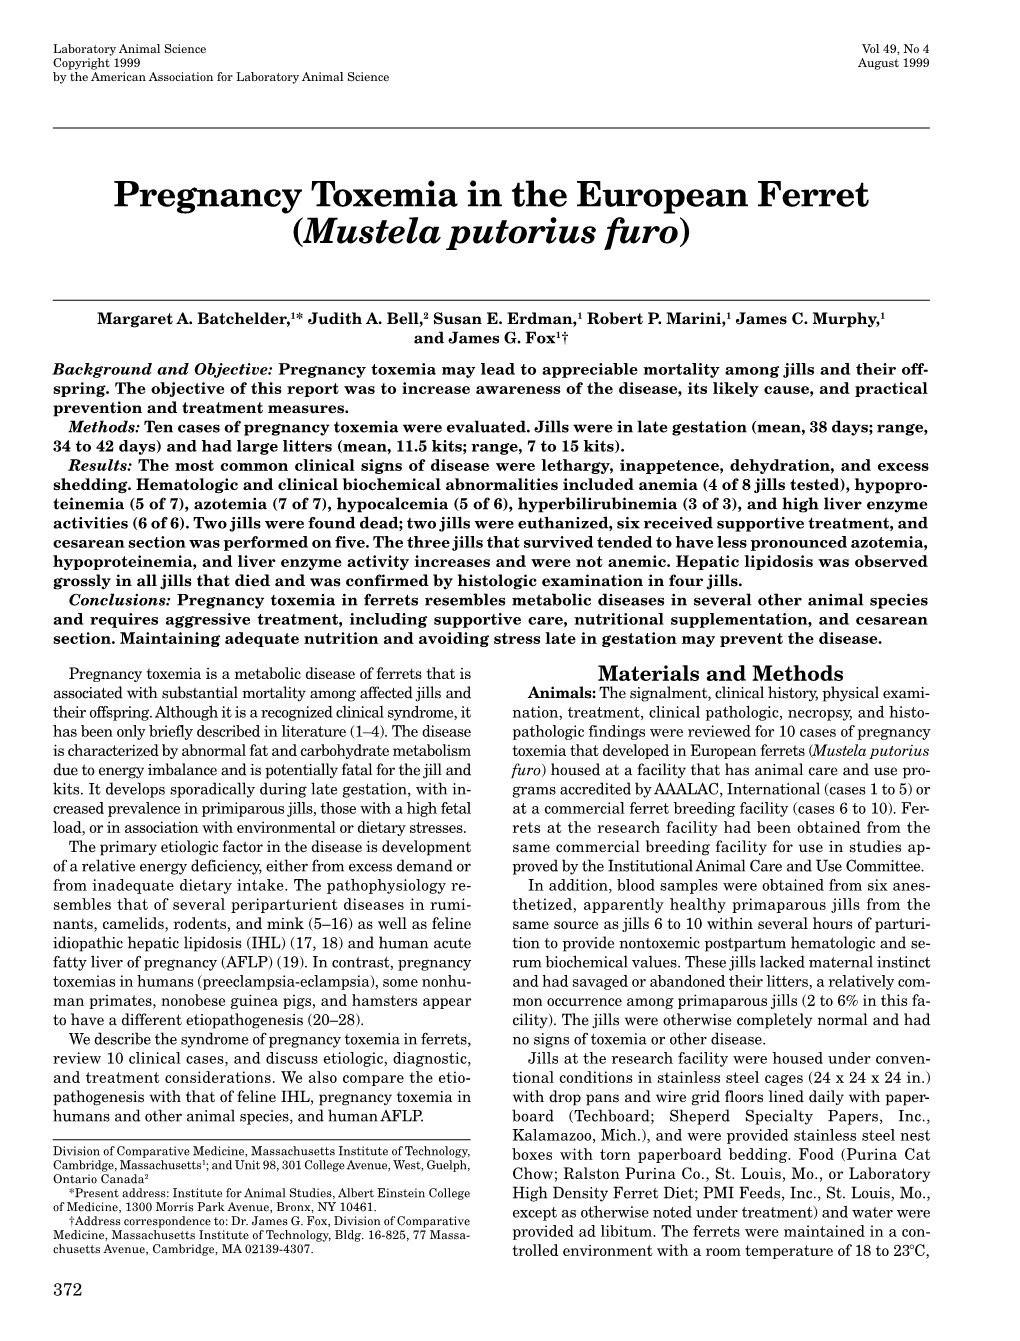 Pregnancy Toxemia in the European Ferret (&lt;I&gt;Mustela Putorius Furo&lt;/I&gt;)